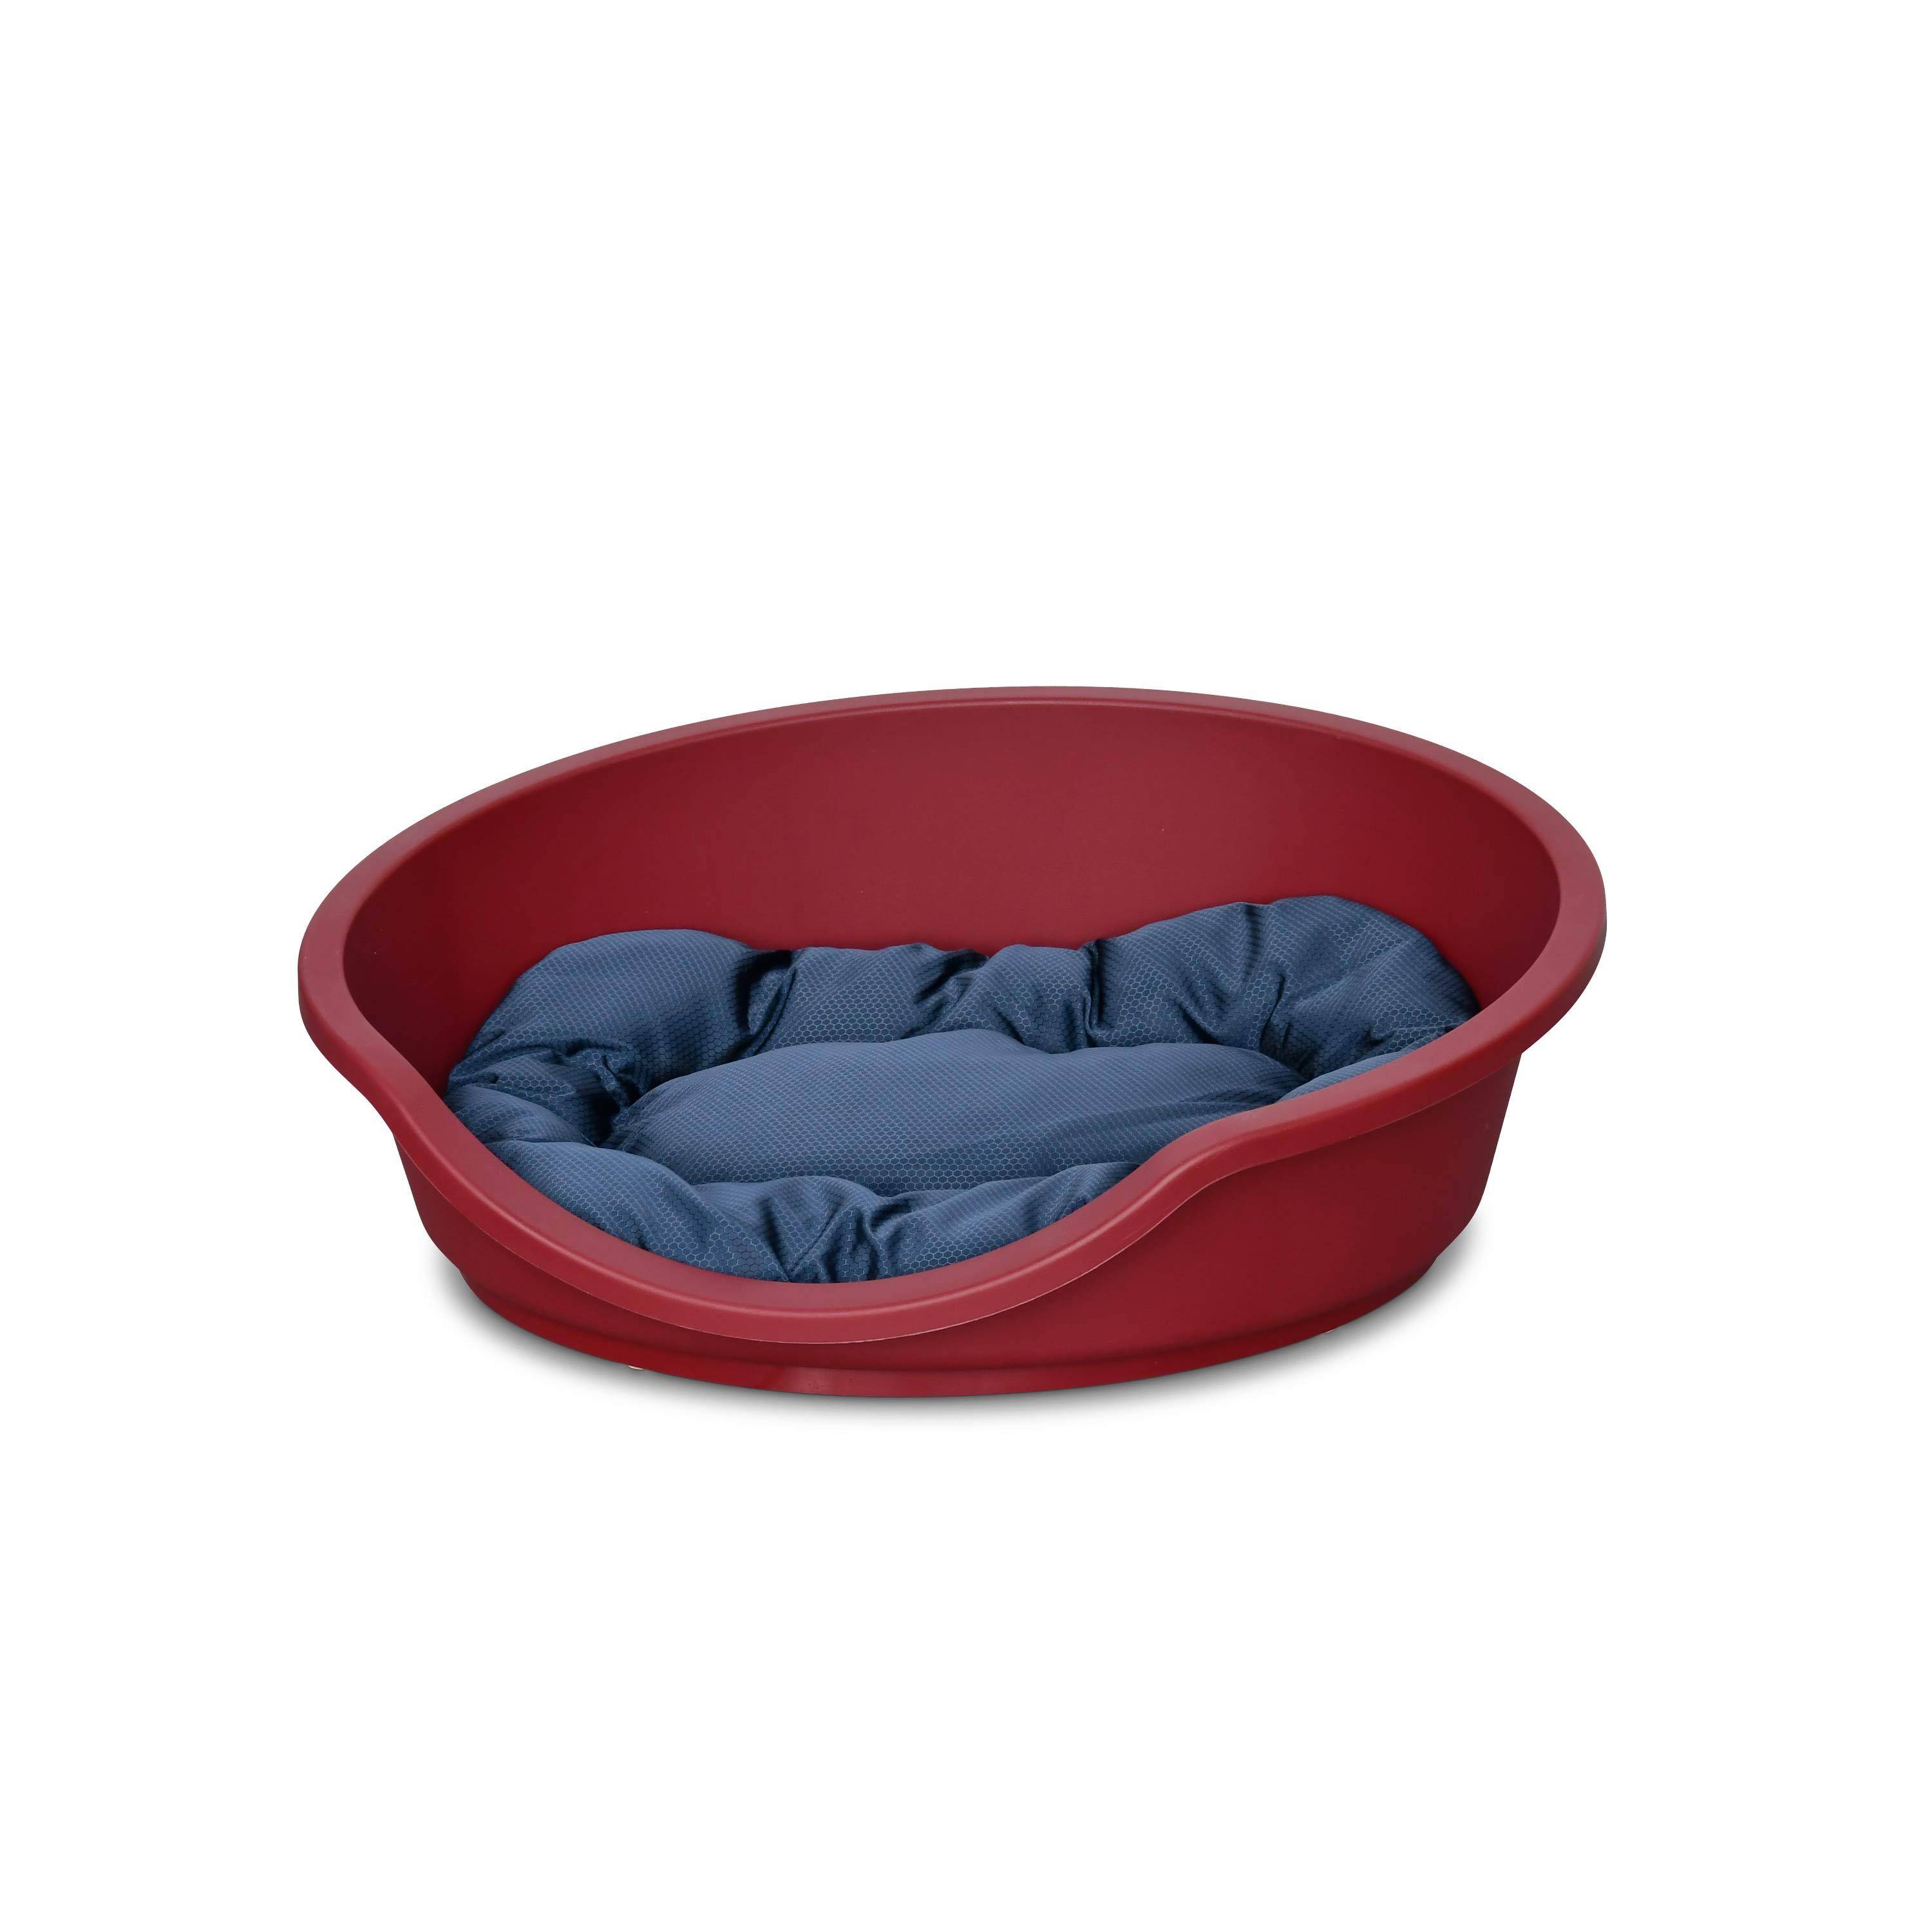 Rode plastic mand voor middelgrote hond en ovaal grijs/blauw hondenkussen van katoen en polyester, 70x60 cm, taille M  Photo1